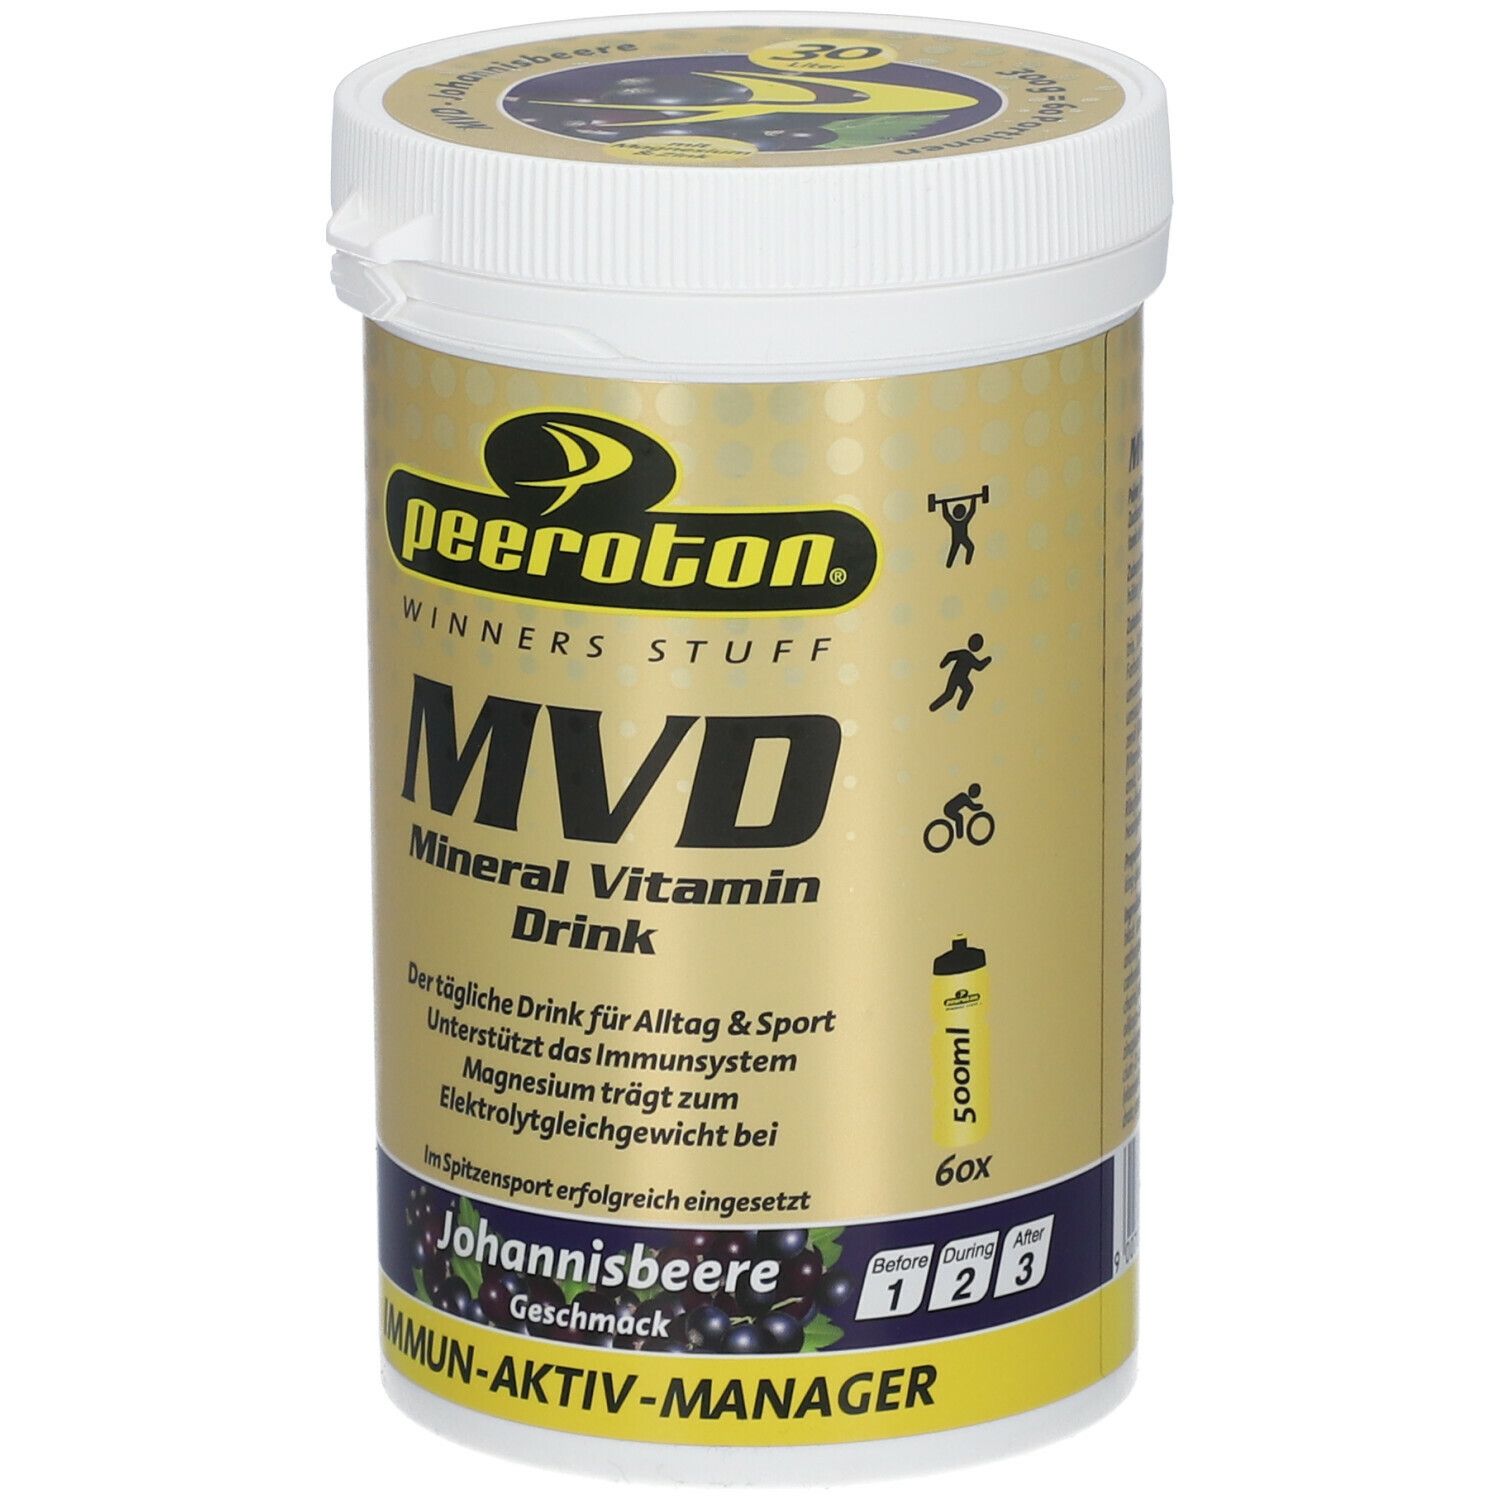 peeroton® MVD Mineral Vitamin Drink Johannisbeere